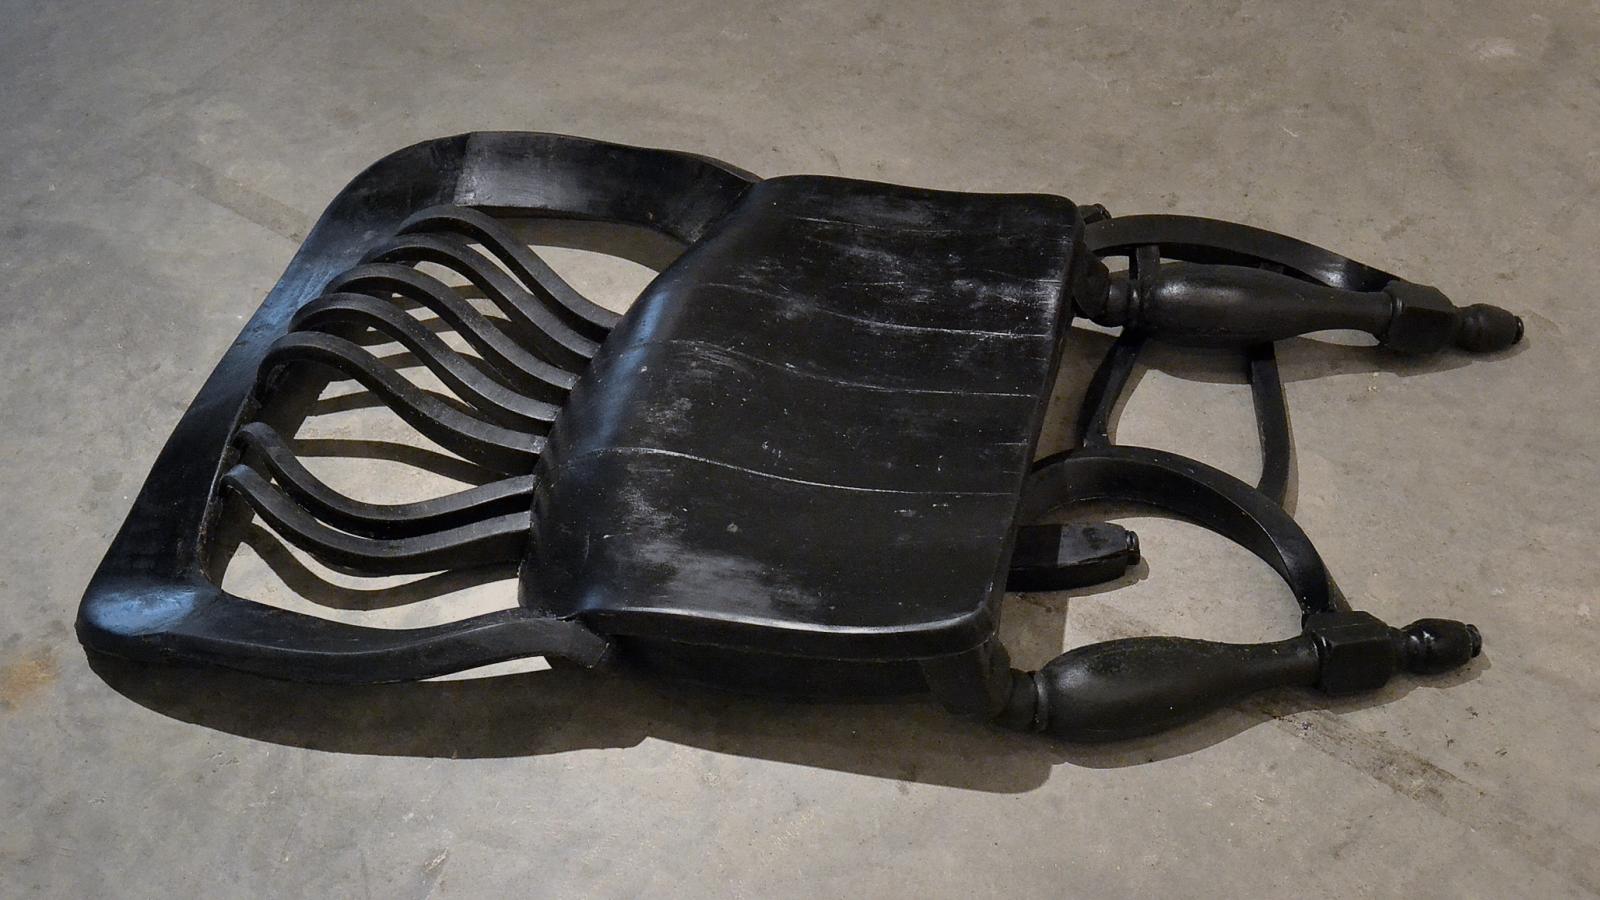 Candace Black: "Chair #1," Reoflex urethane rubber, black pigment, 2013